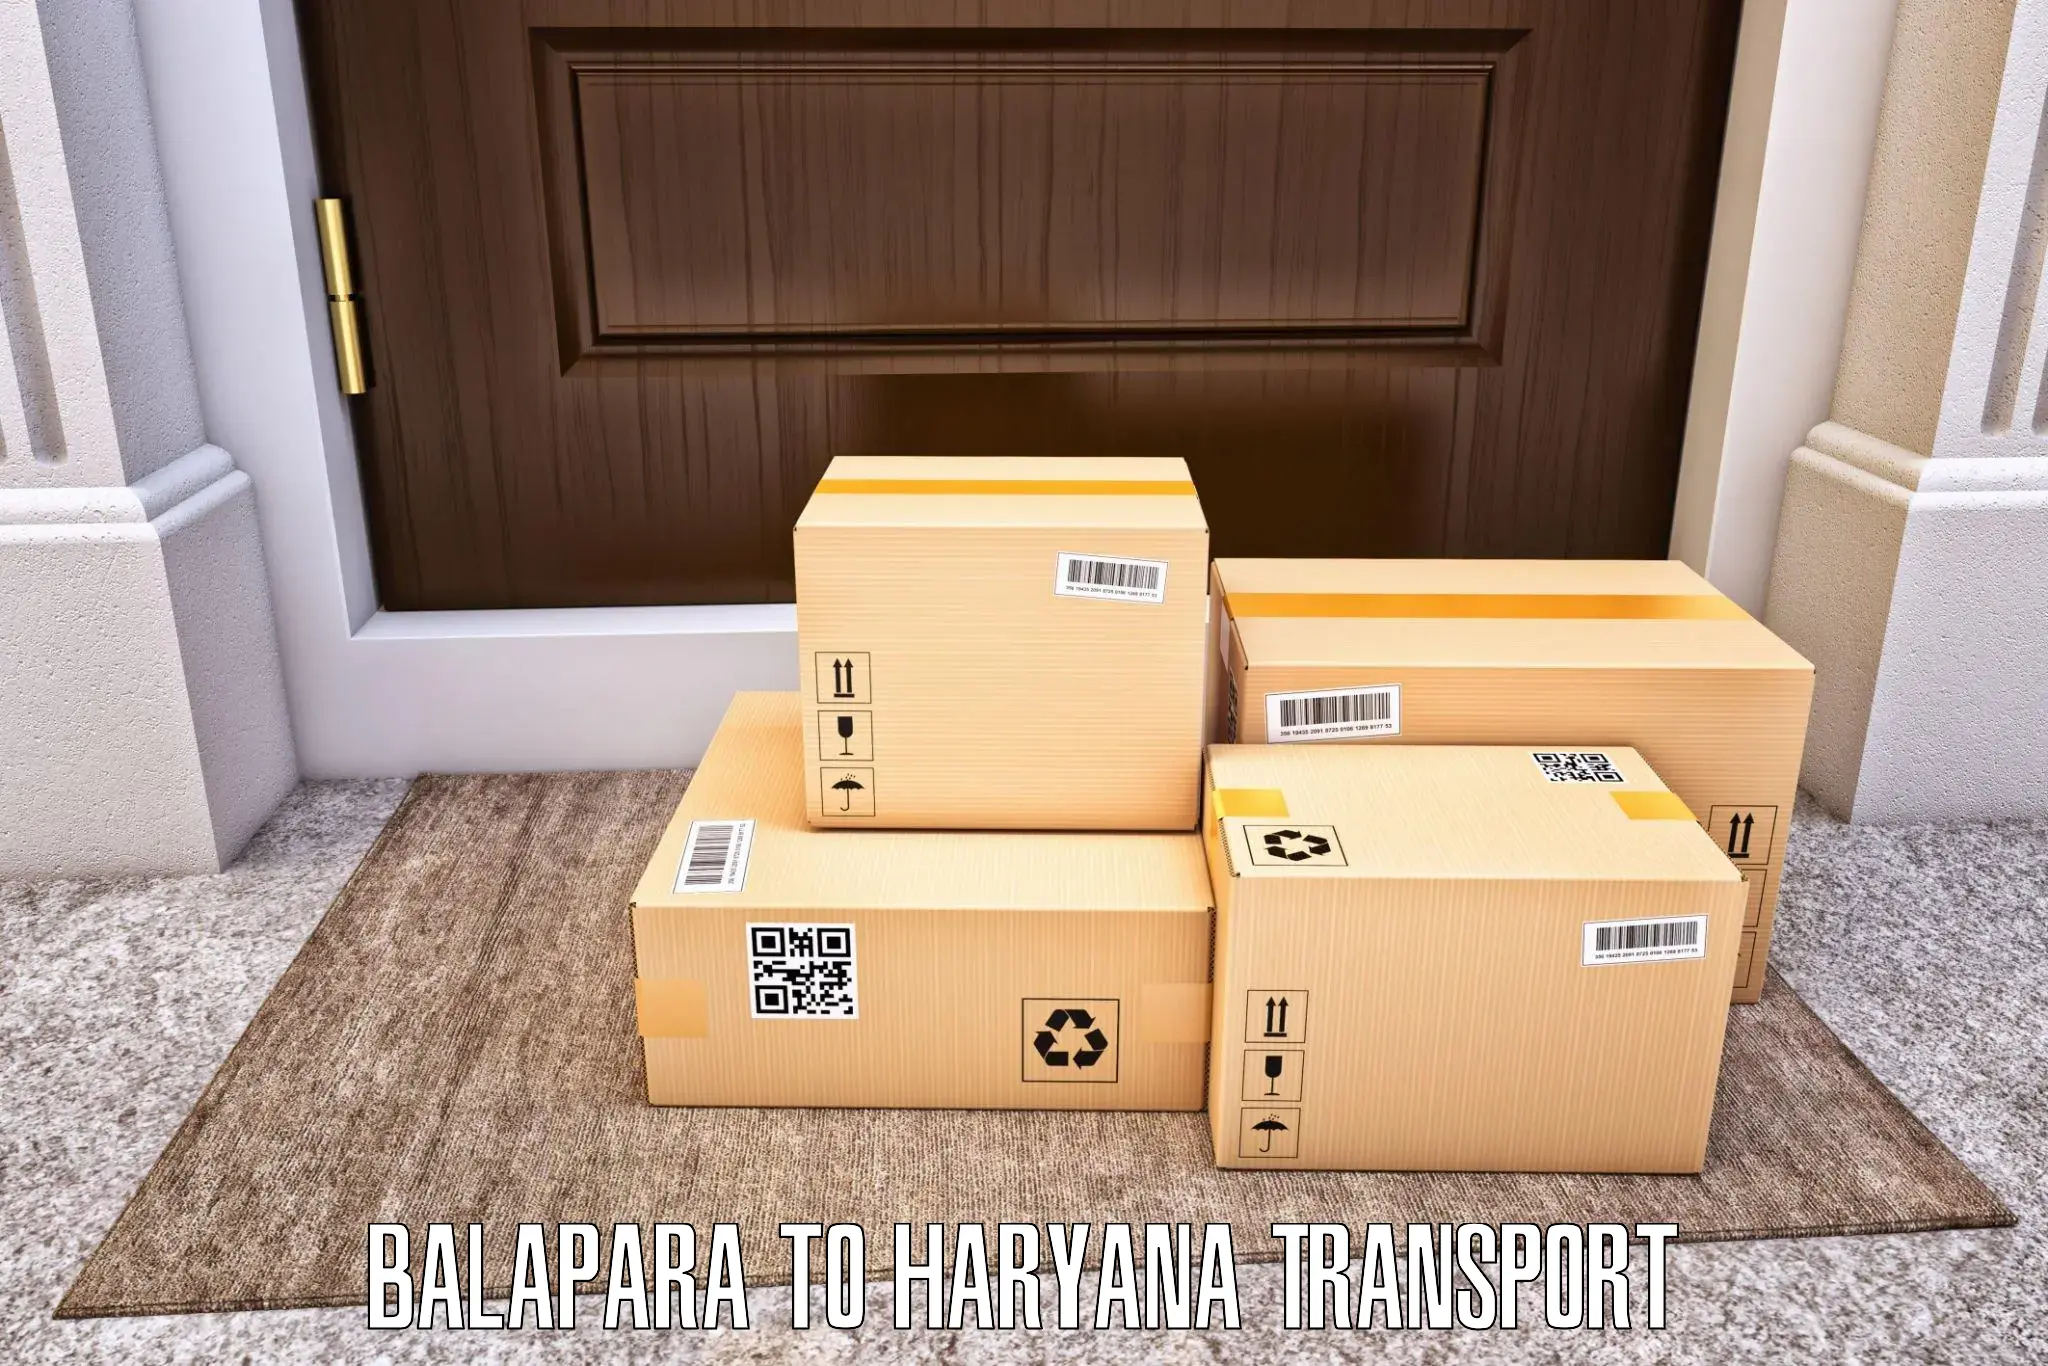 Transport services Balapara to Karnal